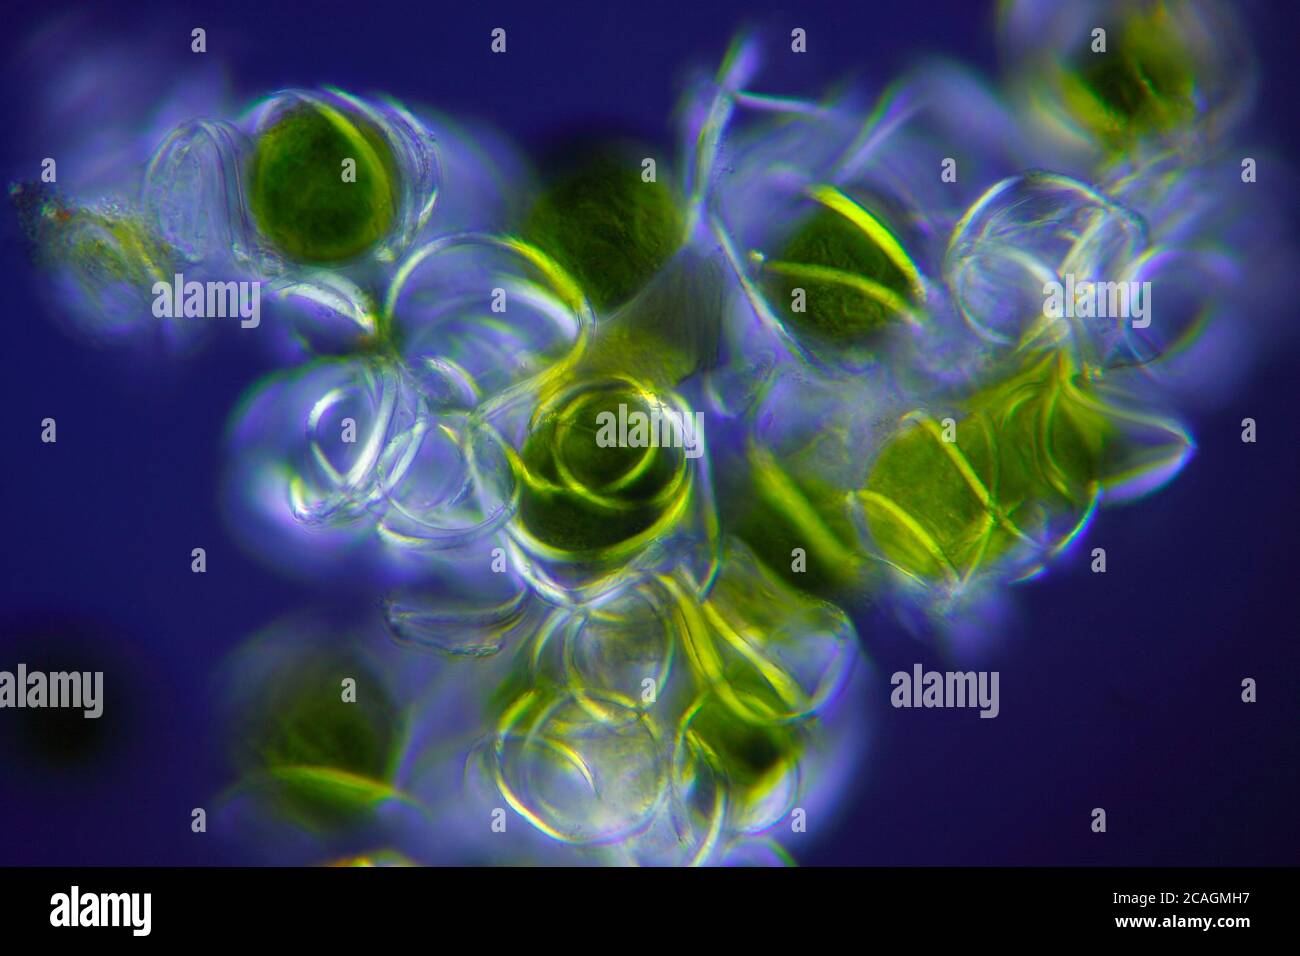 Vue microscopique d'un champignon de l'Horsetail (Equisetum arvense) avec des élatères. Lumière polarisée avec polariseurs croisés. Banque D'Images